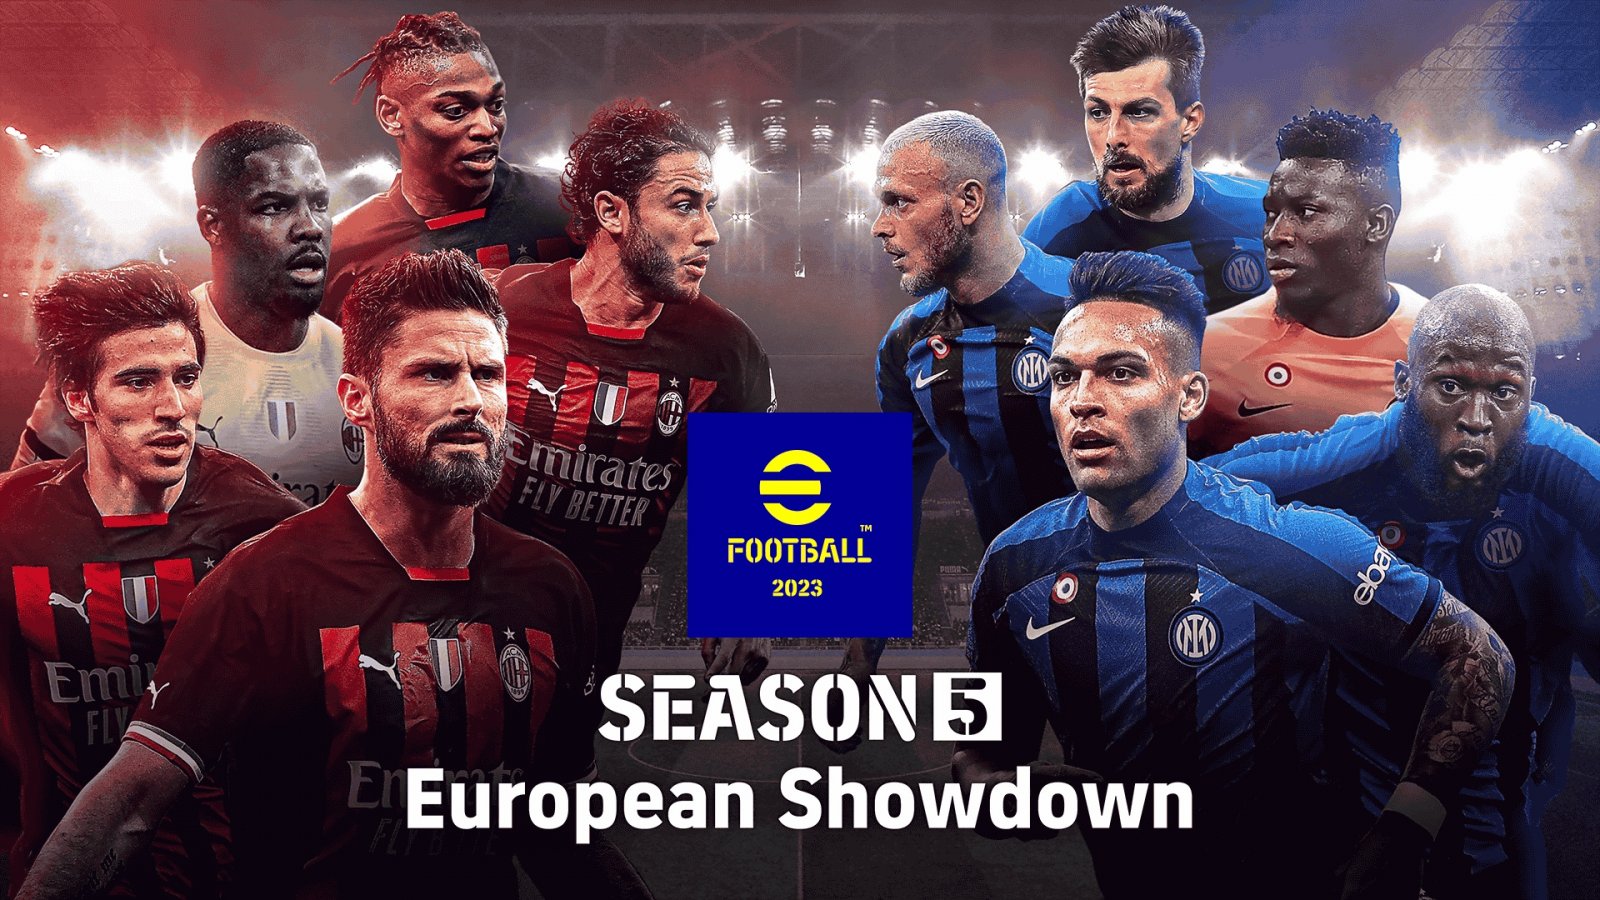 eFootball 2023, al via la Stagione 5 'European Showdown', trailer e dettagli